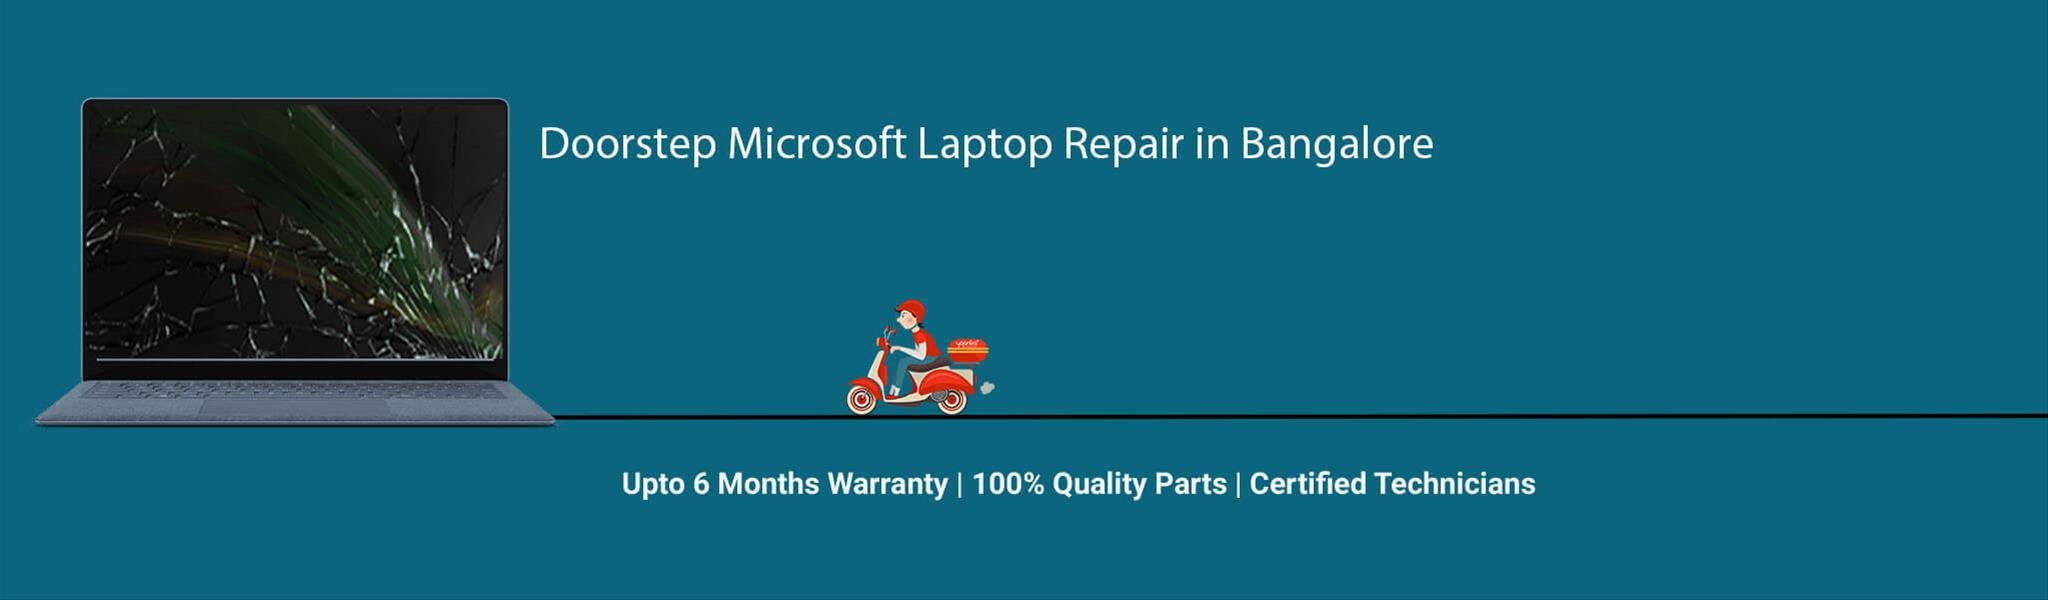 Microsoft-laptop-banner-bangalore.jpg